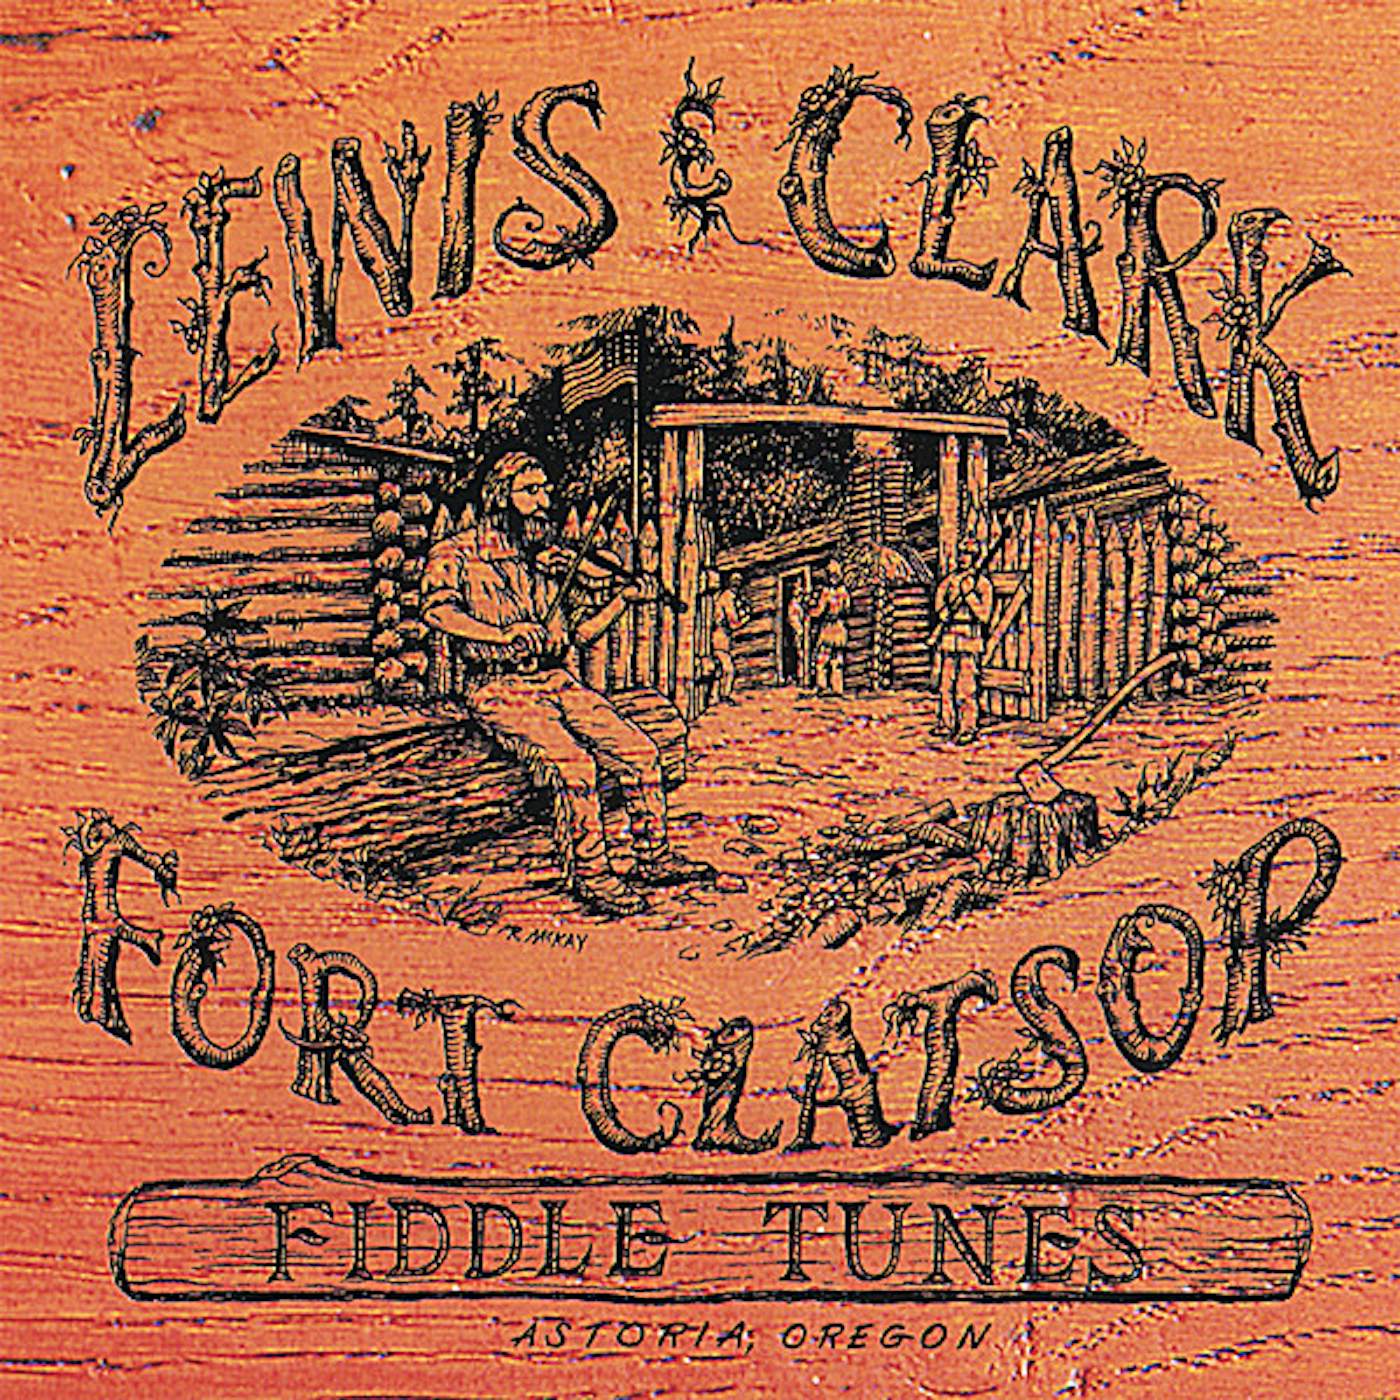 John Allen LEWIS & CLARK FORT CLATSOP FIDDLE TUNES CD